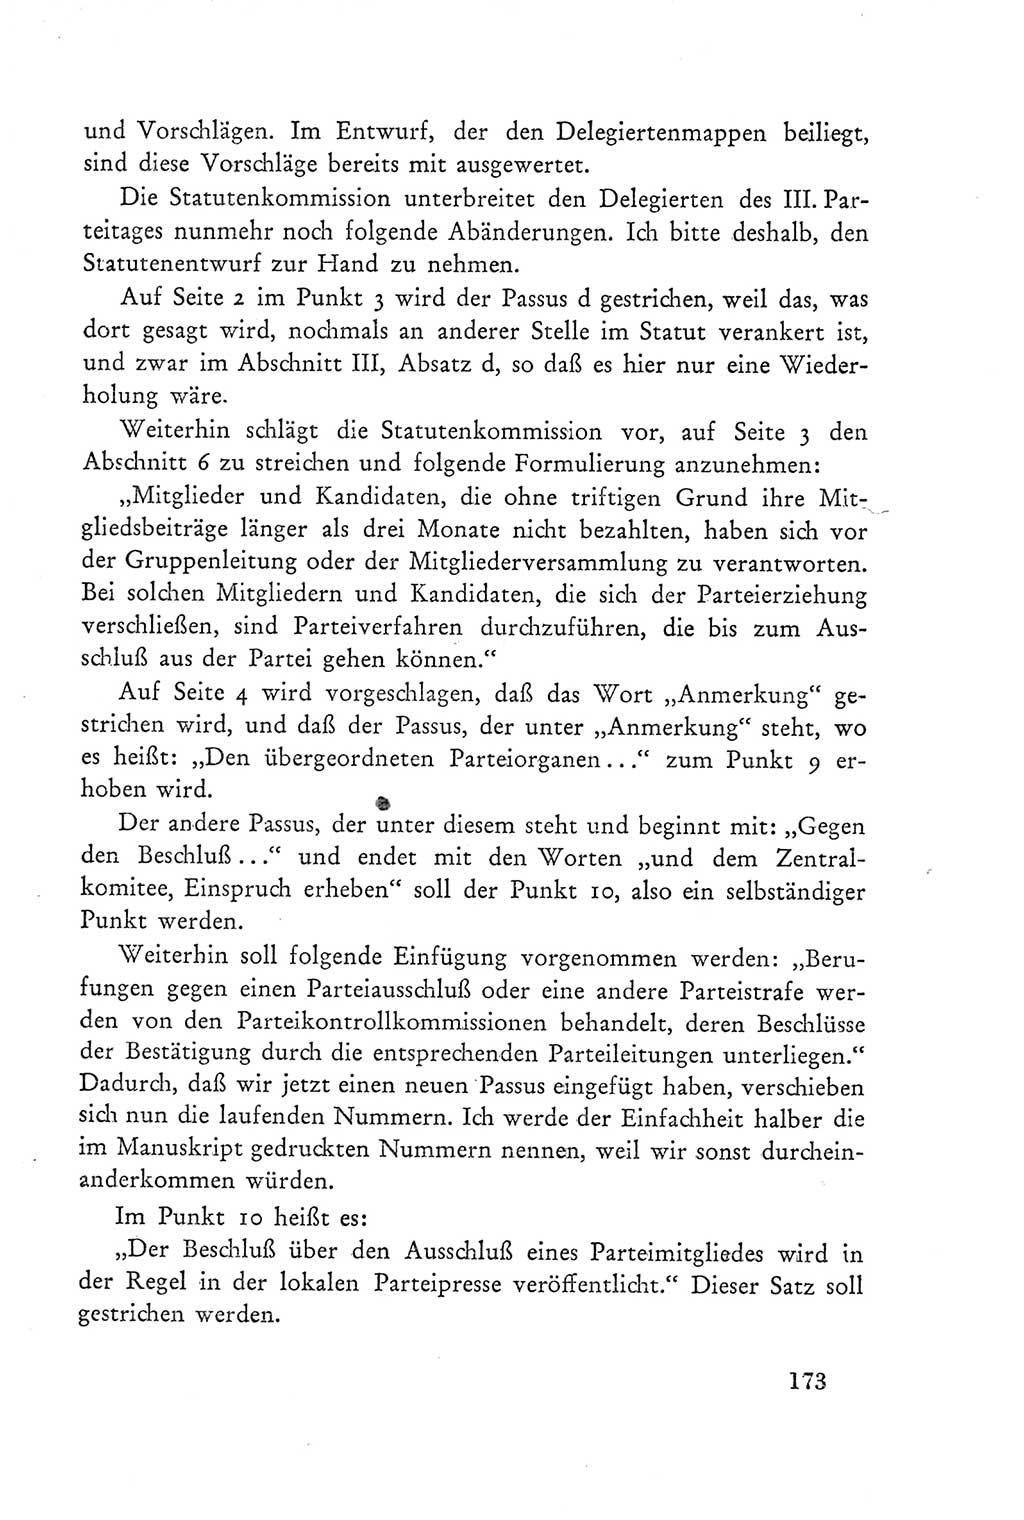 Protokoll der Verhandlungen des Ⅲ. Parteitages der Sozialistischen Einheitspartei Deutschlands (SED) [Deutsche Demokratische Republik (DDR)] 1950, Band 2, Seite 173 (Prot. Verh. Ⅲ. PT SED DDR 1950, Bd. 2, S. 173)